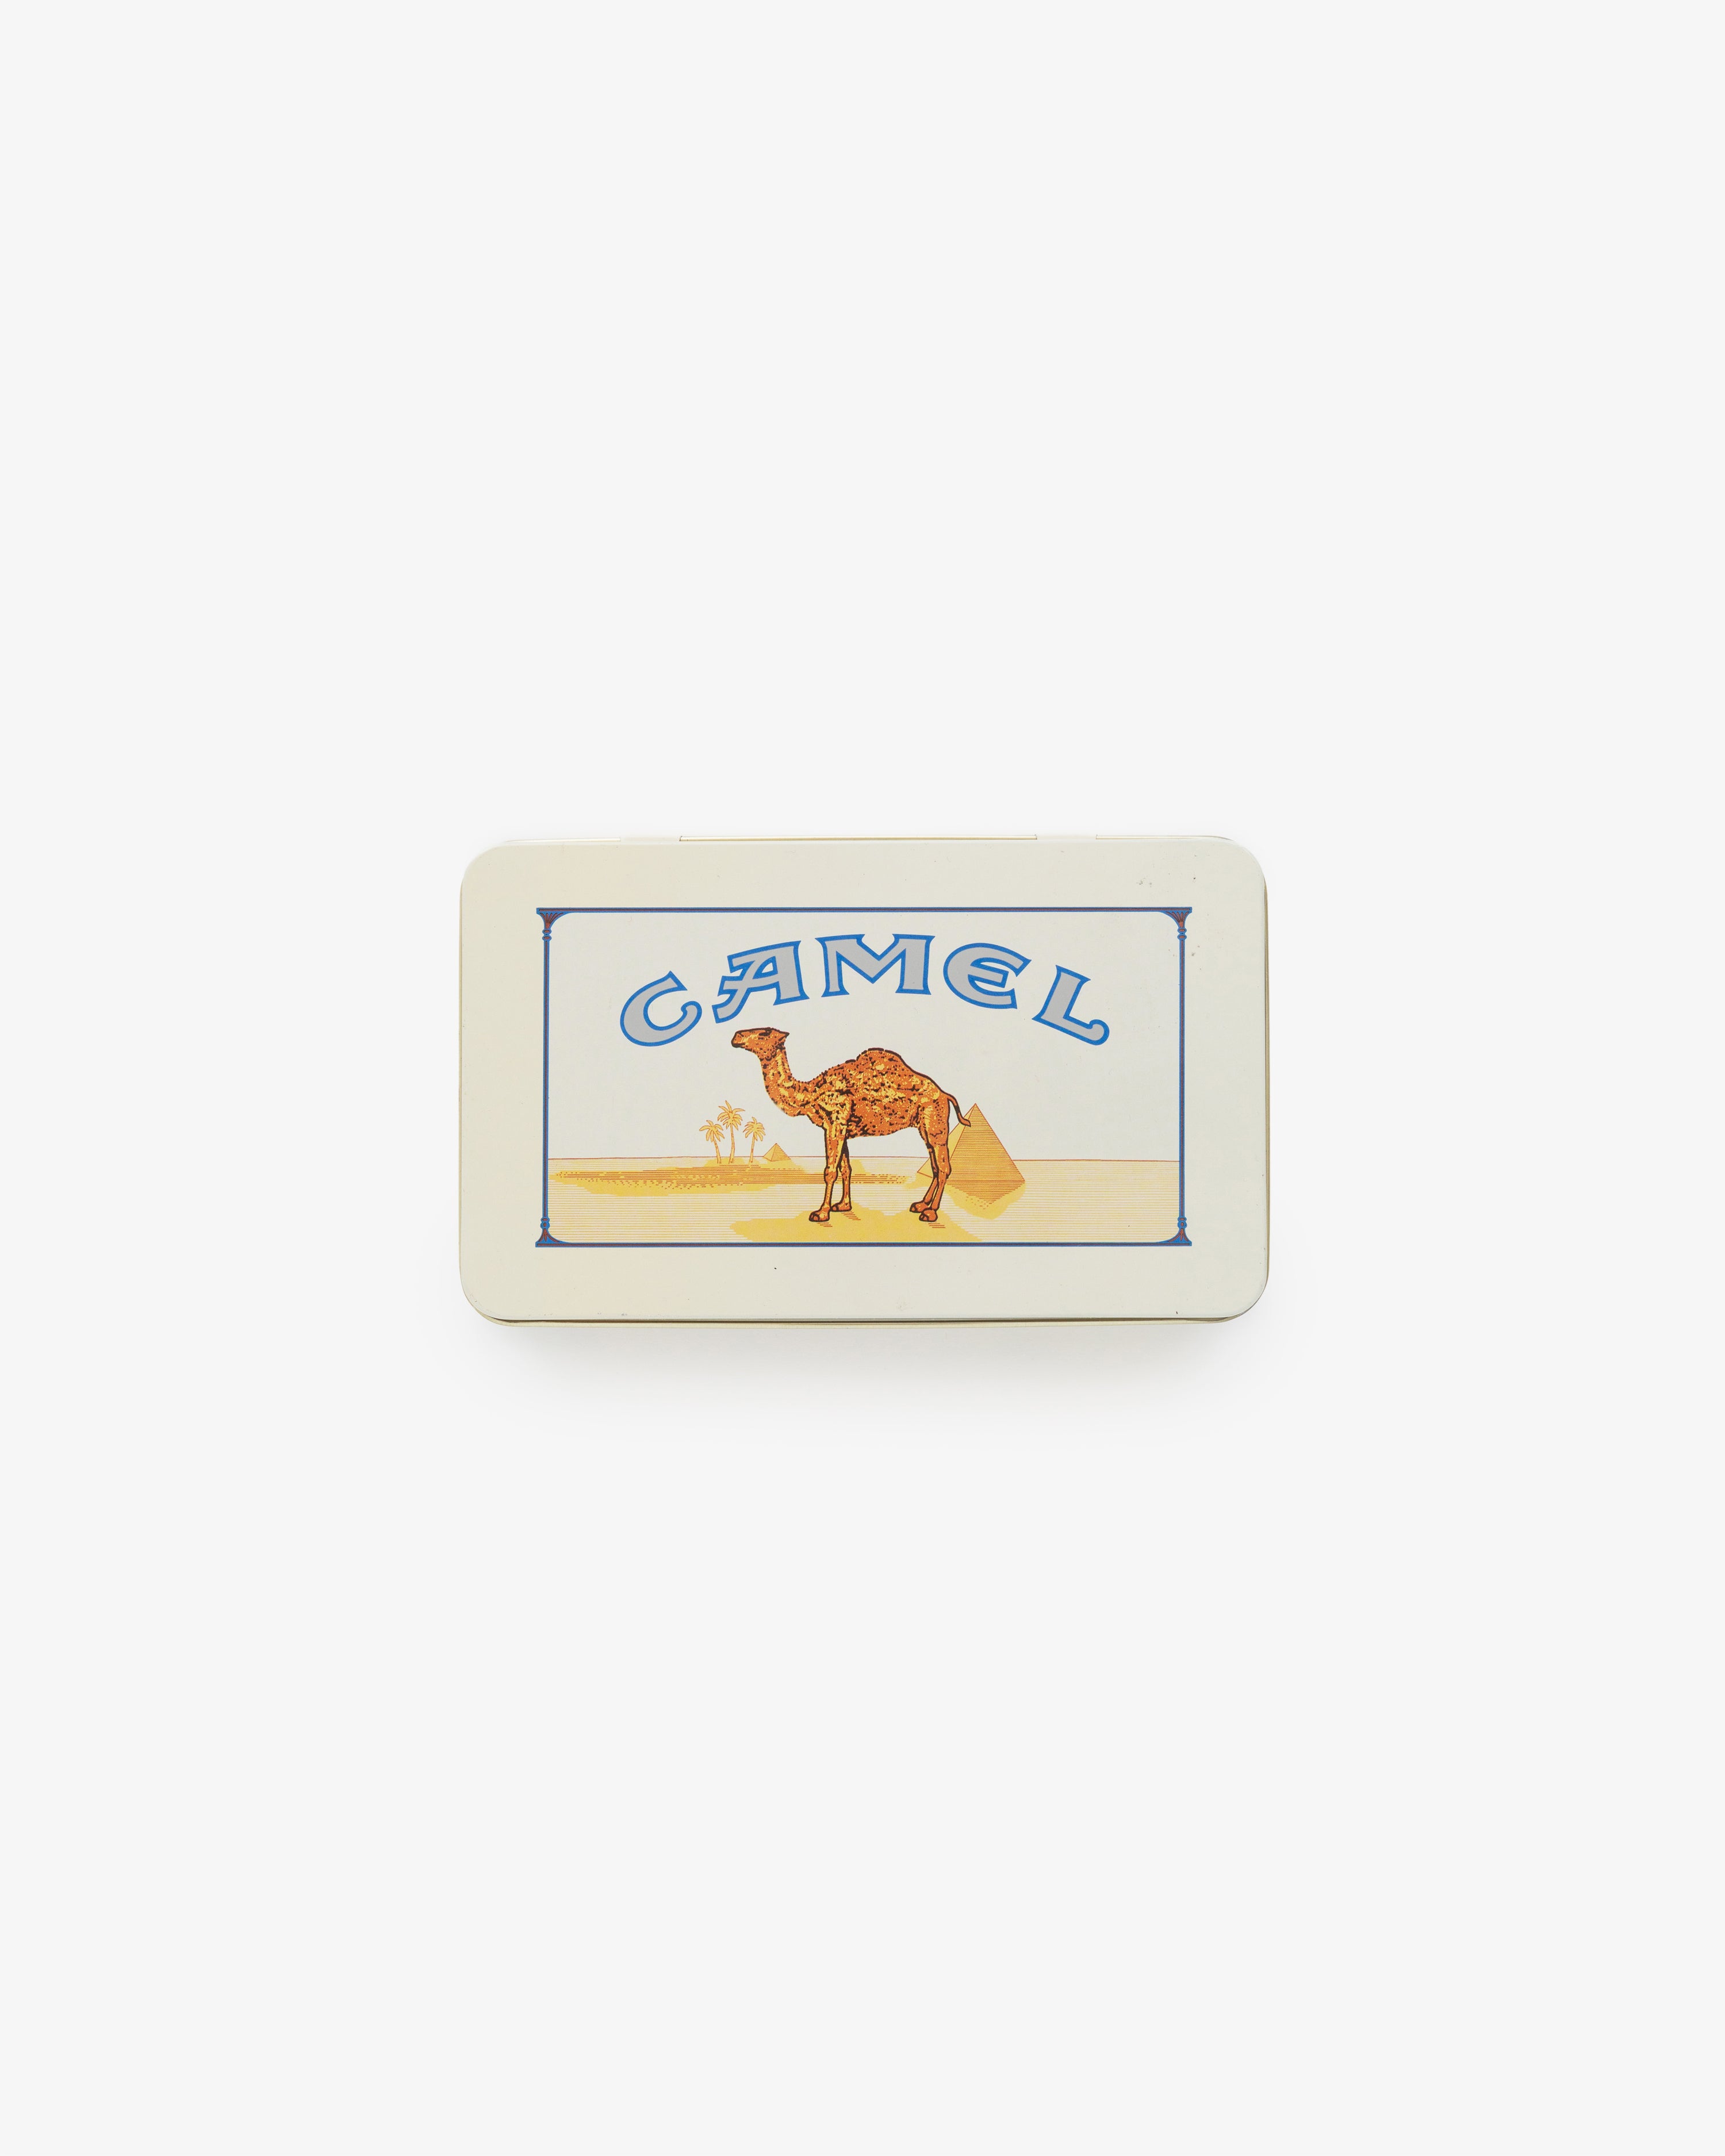 Vintage Camel Cigarette Tin